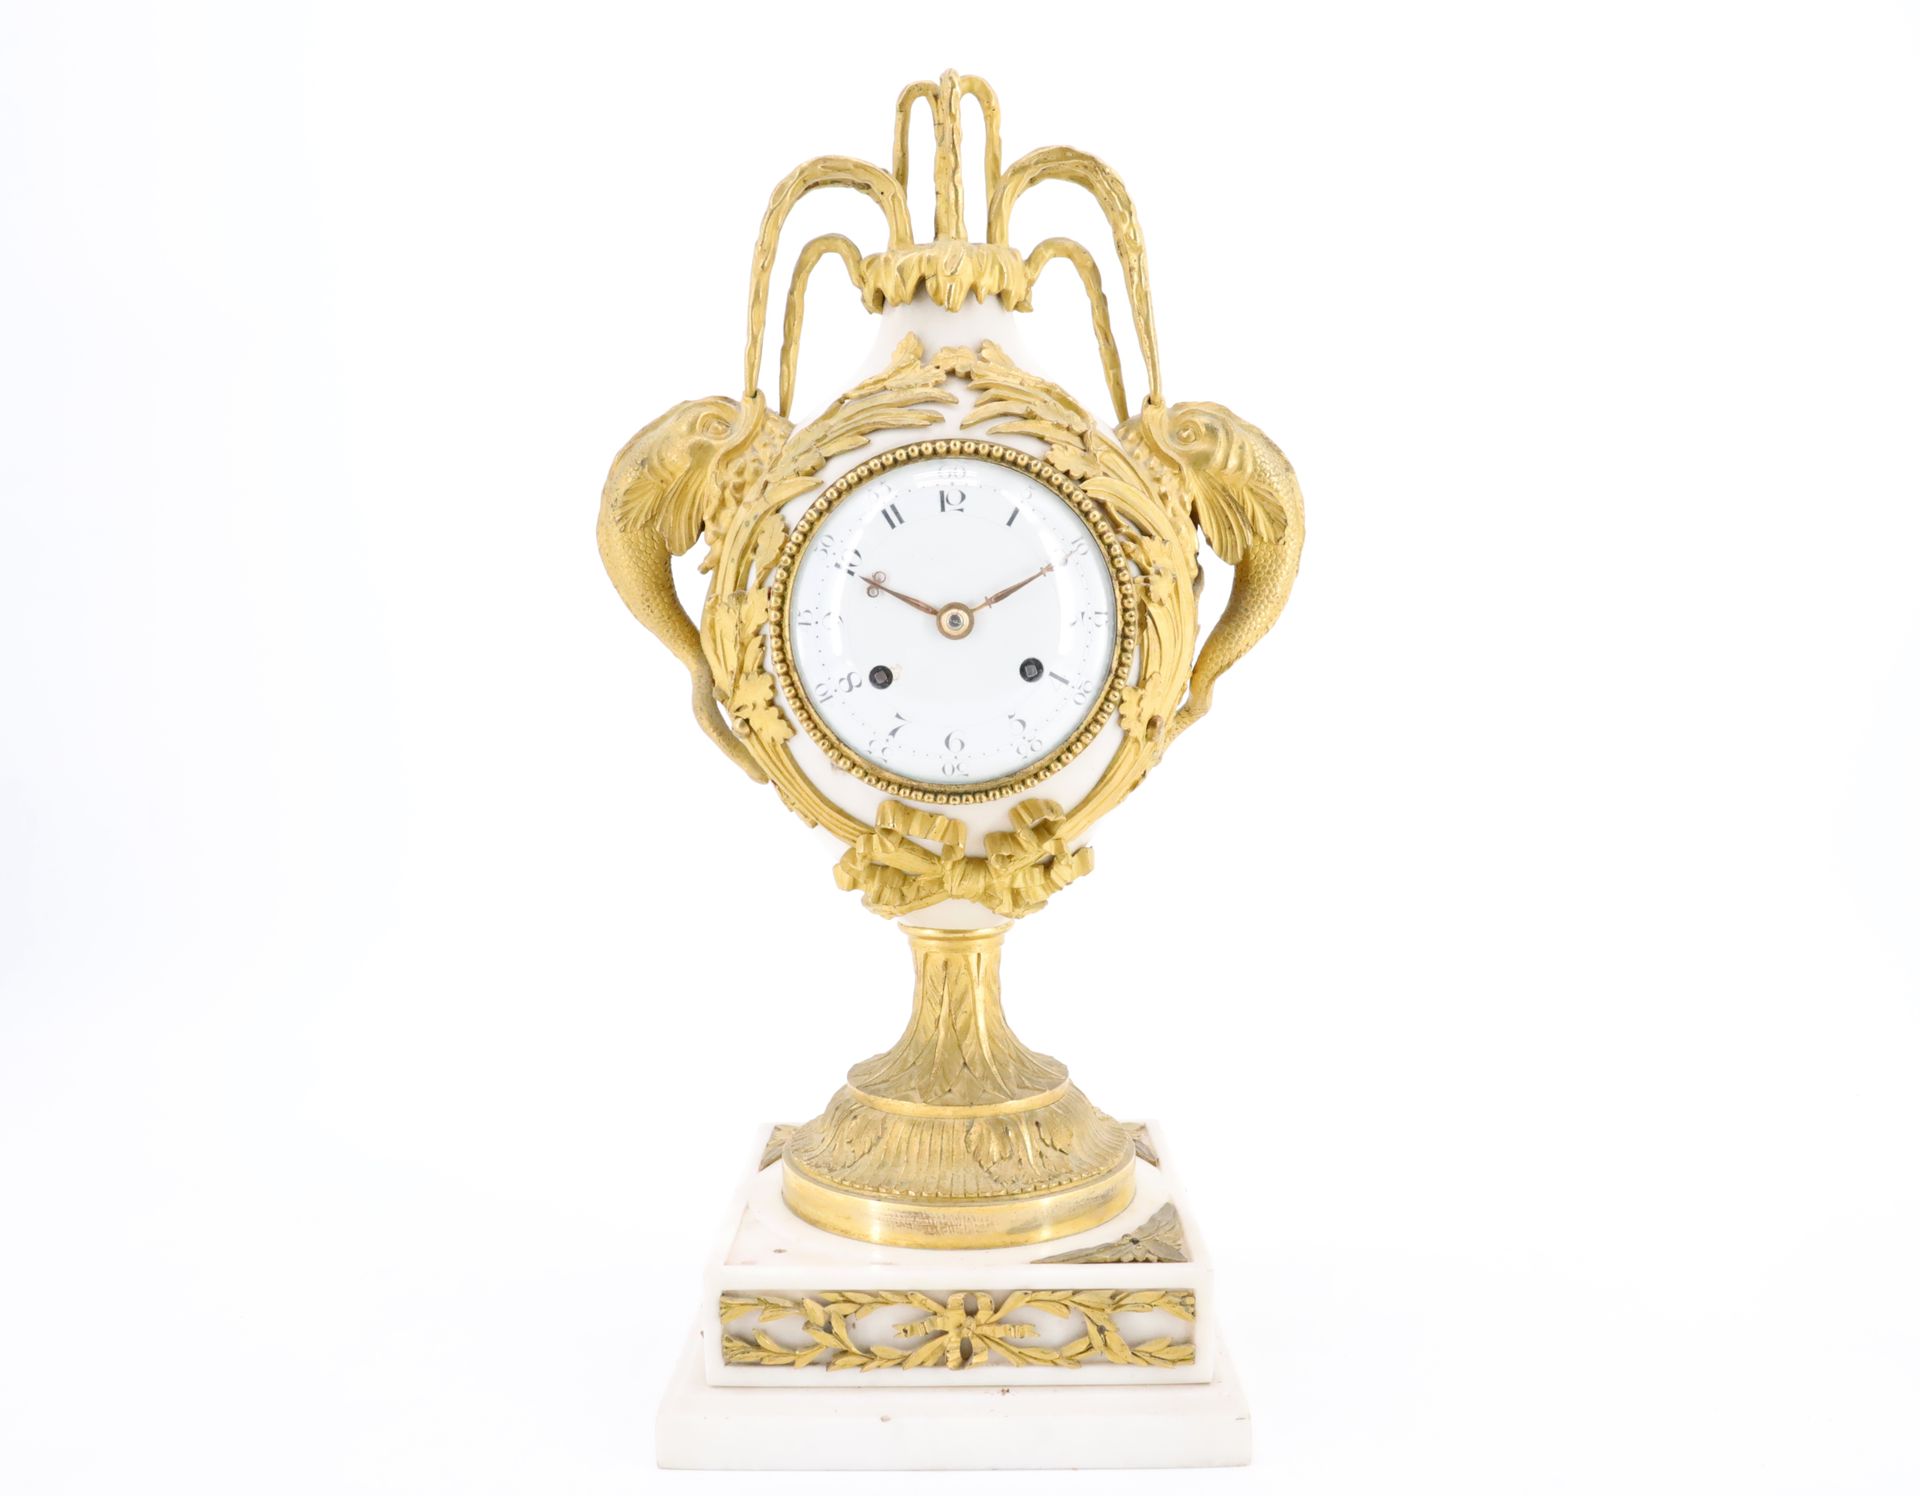 Null 一个路易十六时期的花瓶钟 "aux dauphins"，由白色大理石和带凹槽的鎏金青铜制成，白色珐琅的表盘上刻有阿拉伯数字，表圈上有一排珍珠，表壳由橡&hellip;